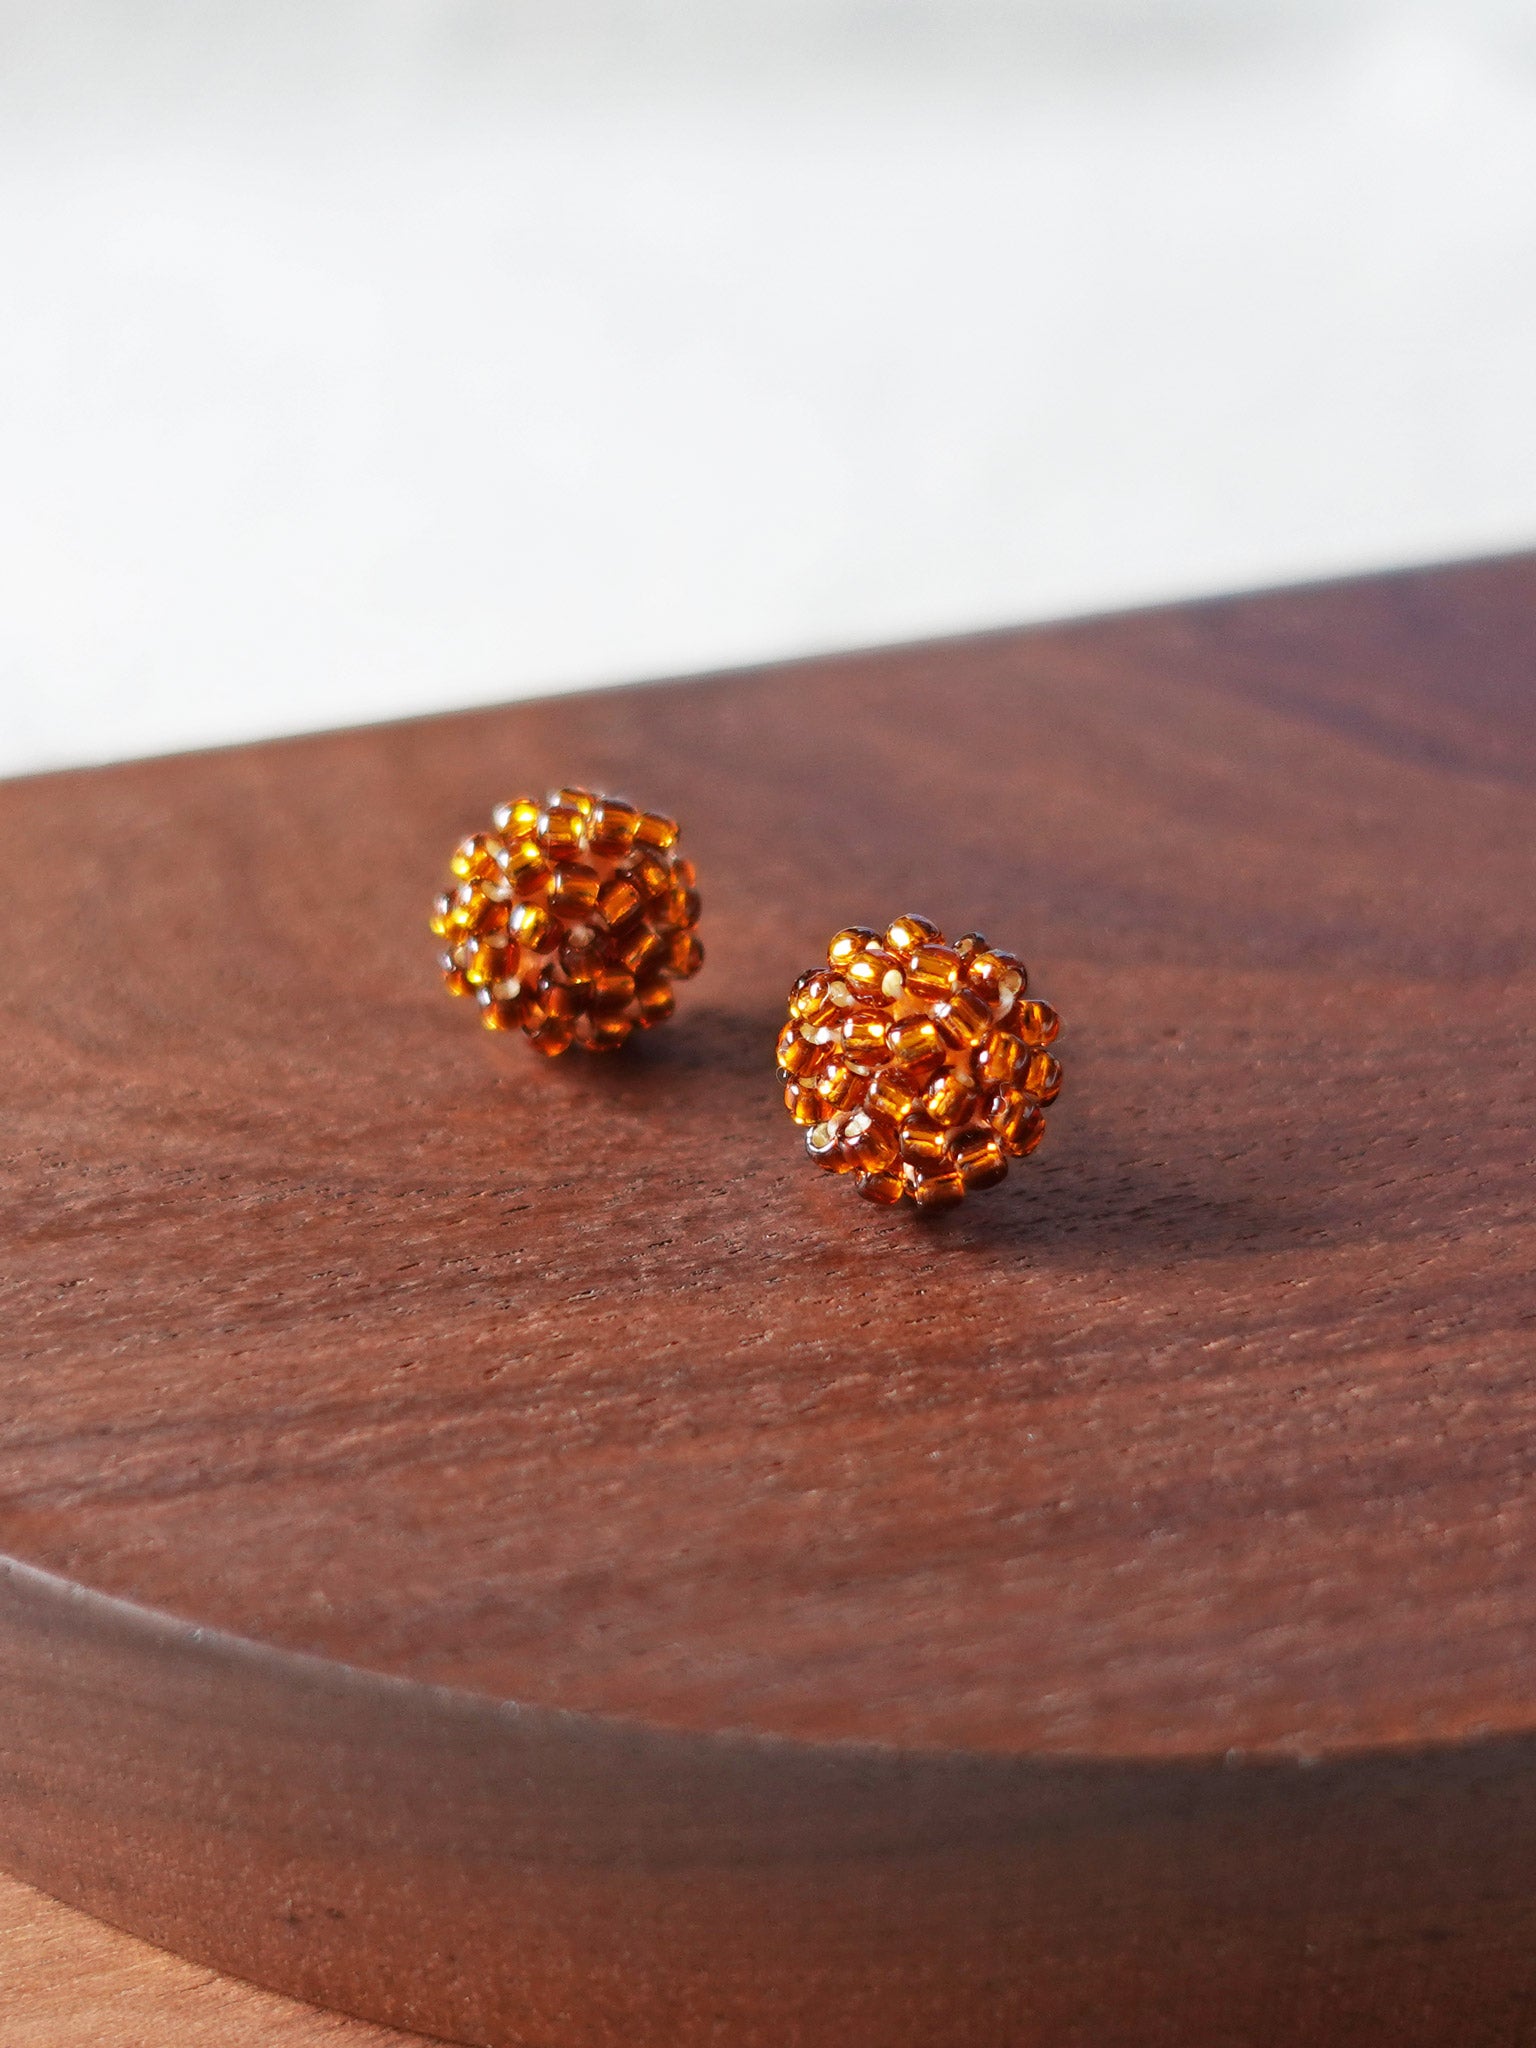 Prelude Petite Stud Earrings in Dark Amber Display SIngle